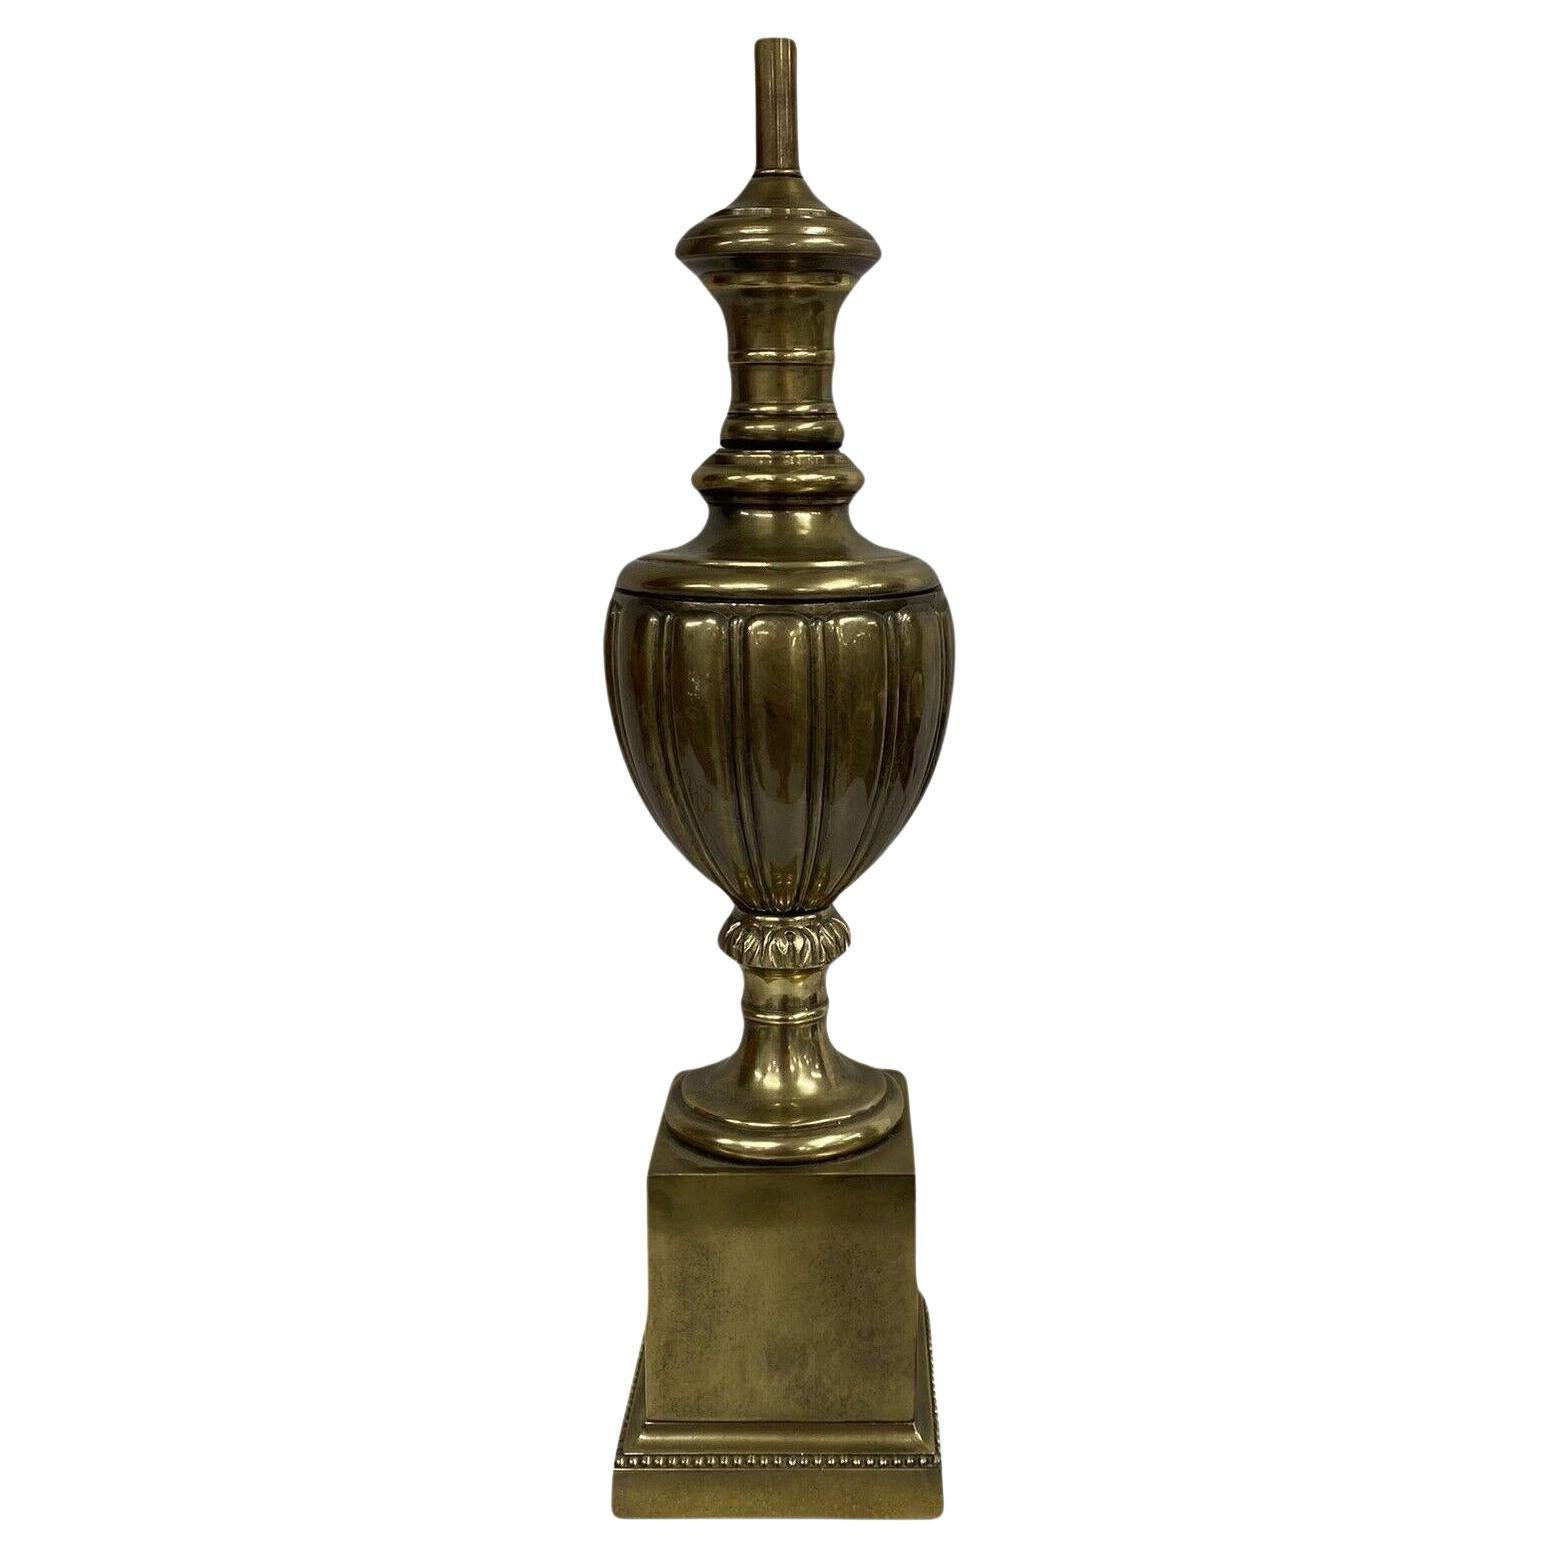 Une seule lampe en bronze néoclassique française des années 1940.

Mesures :
Hauteur du corps : 22